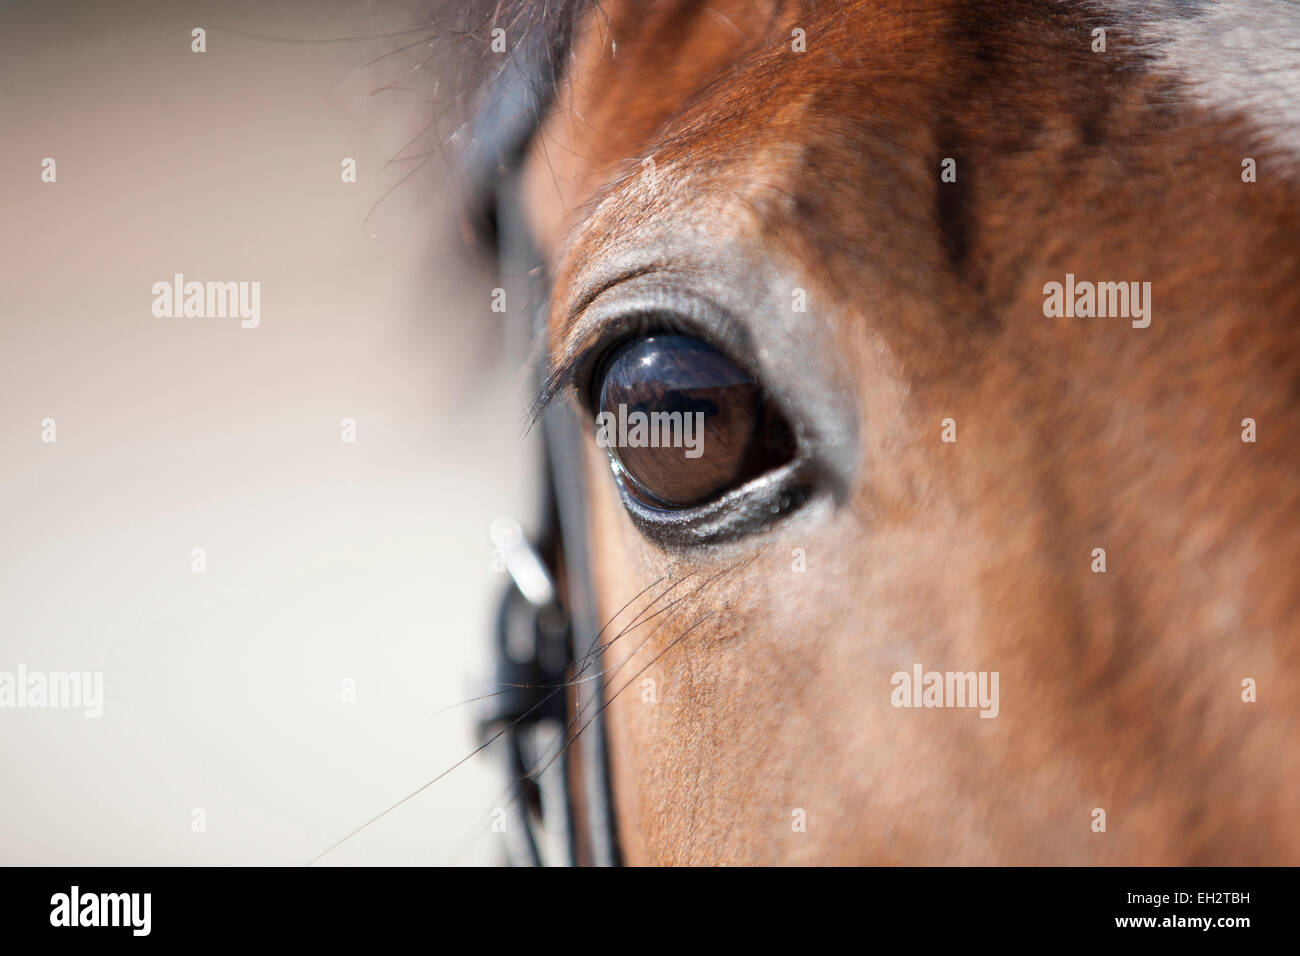 Un occhio di cavalli, close up Foto Stock